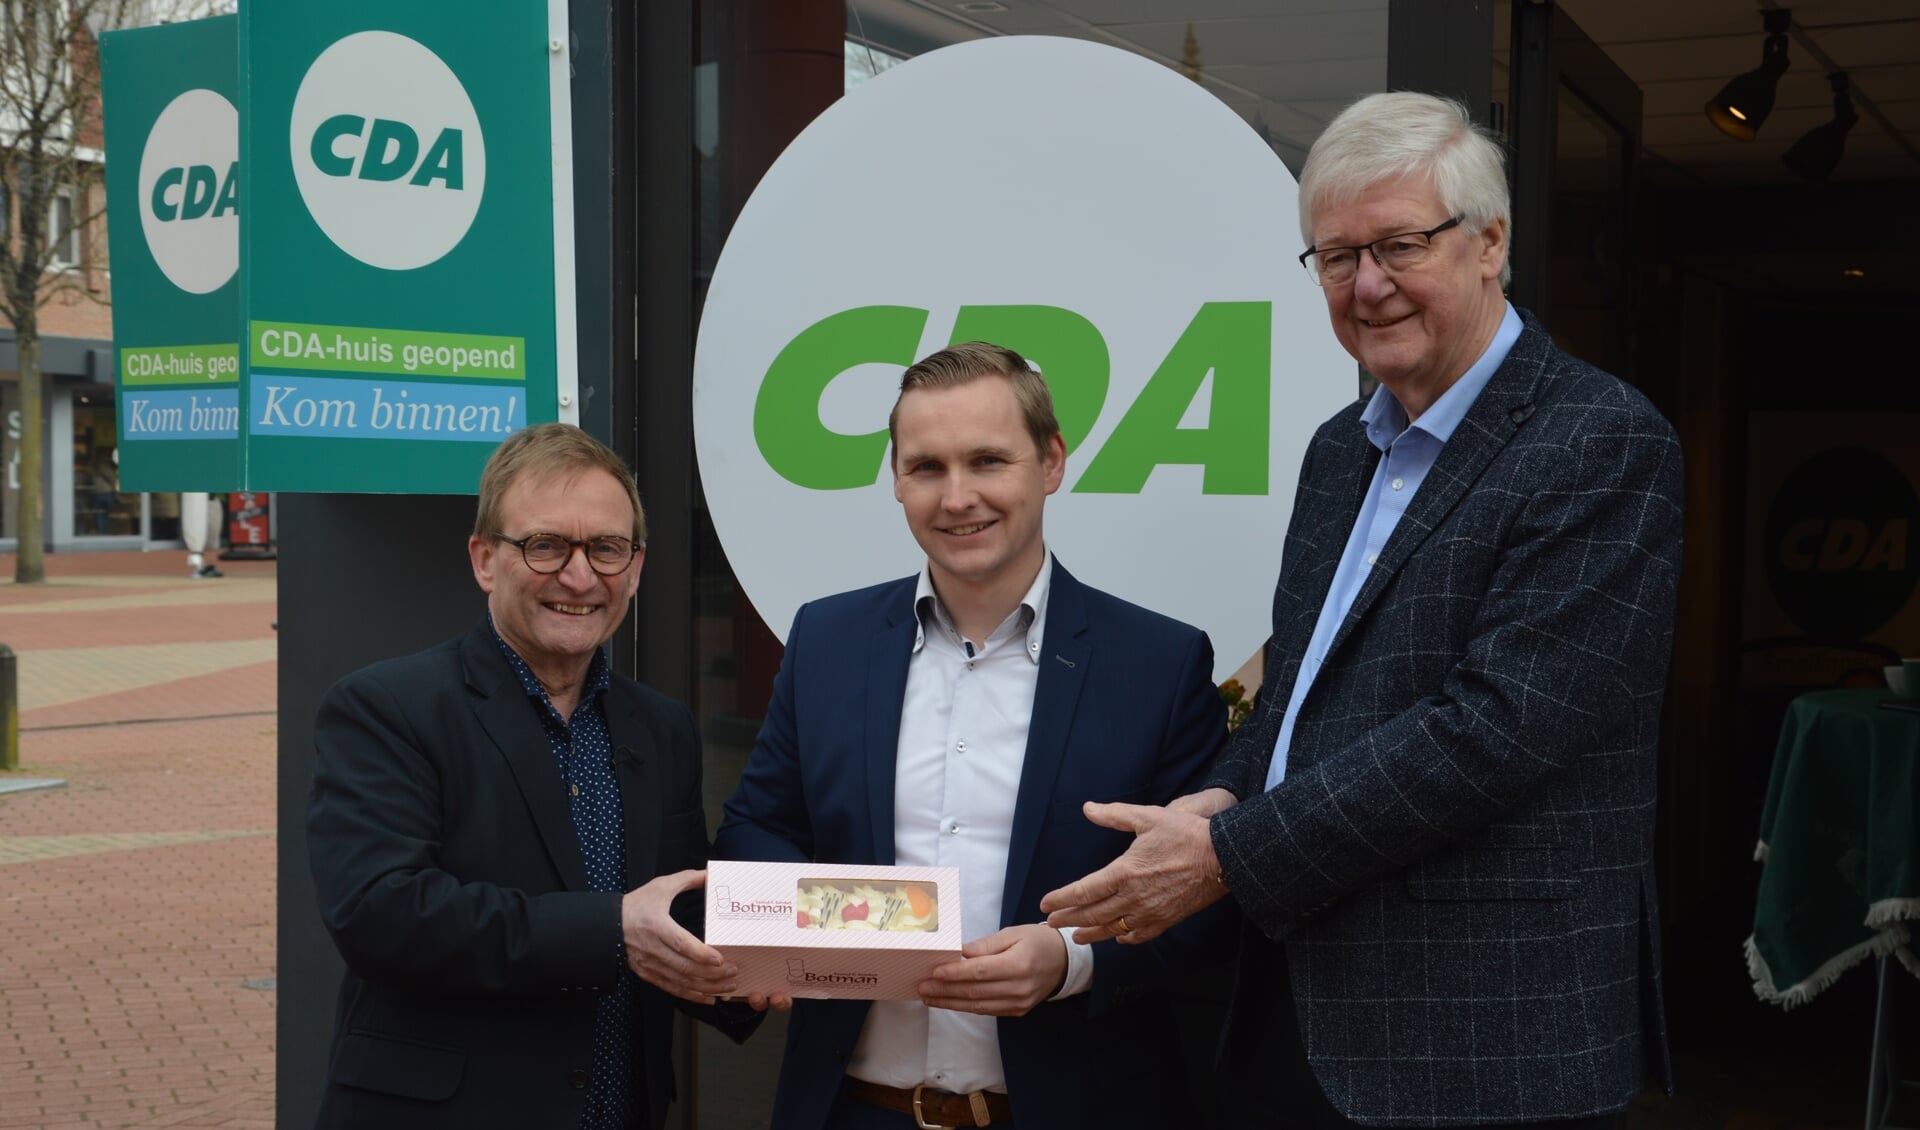 V.l.n.r.: Hans Huijbers, Tjebbe van der Meer en Theo Joosten. Het gebak is voor Van der Meer, die vorige week op straat werd bedreigd, toen hij campagne voerde voor het CDA in Smallingerland.